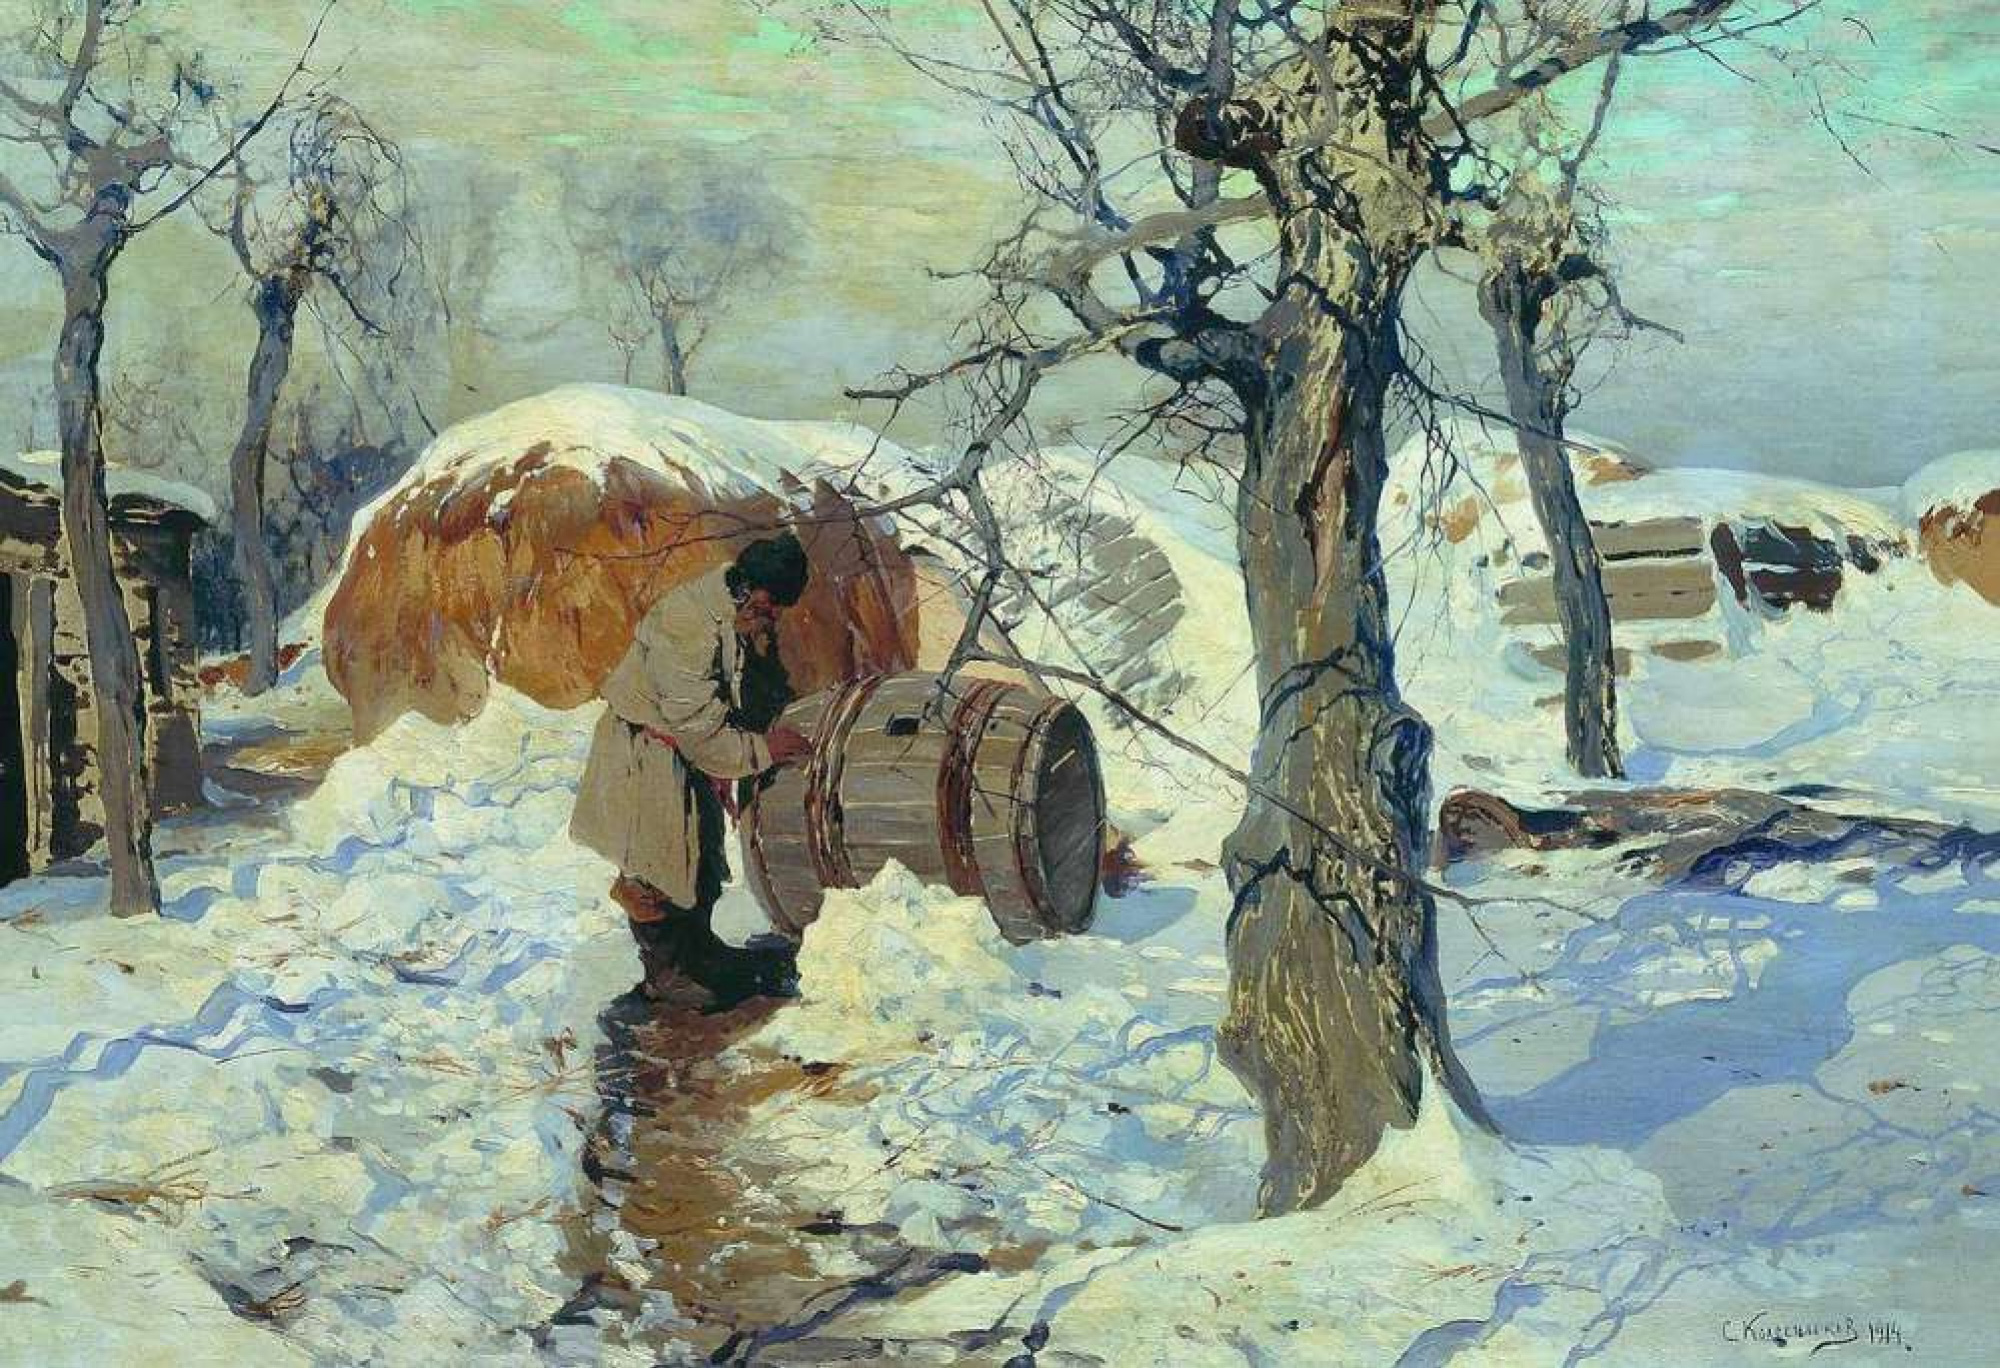 Март картины русских художников